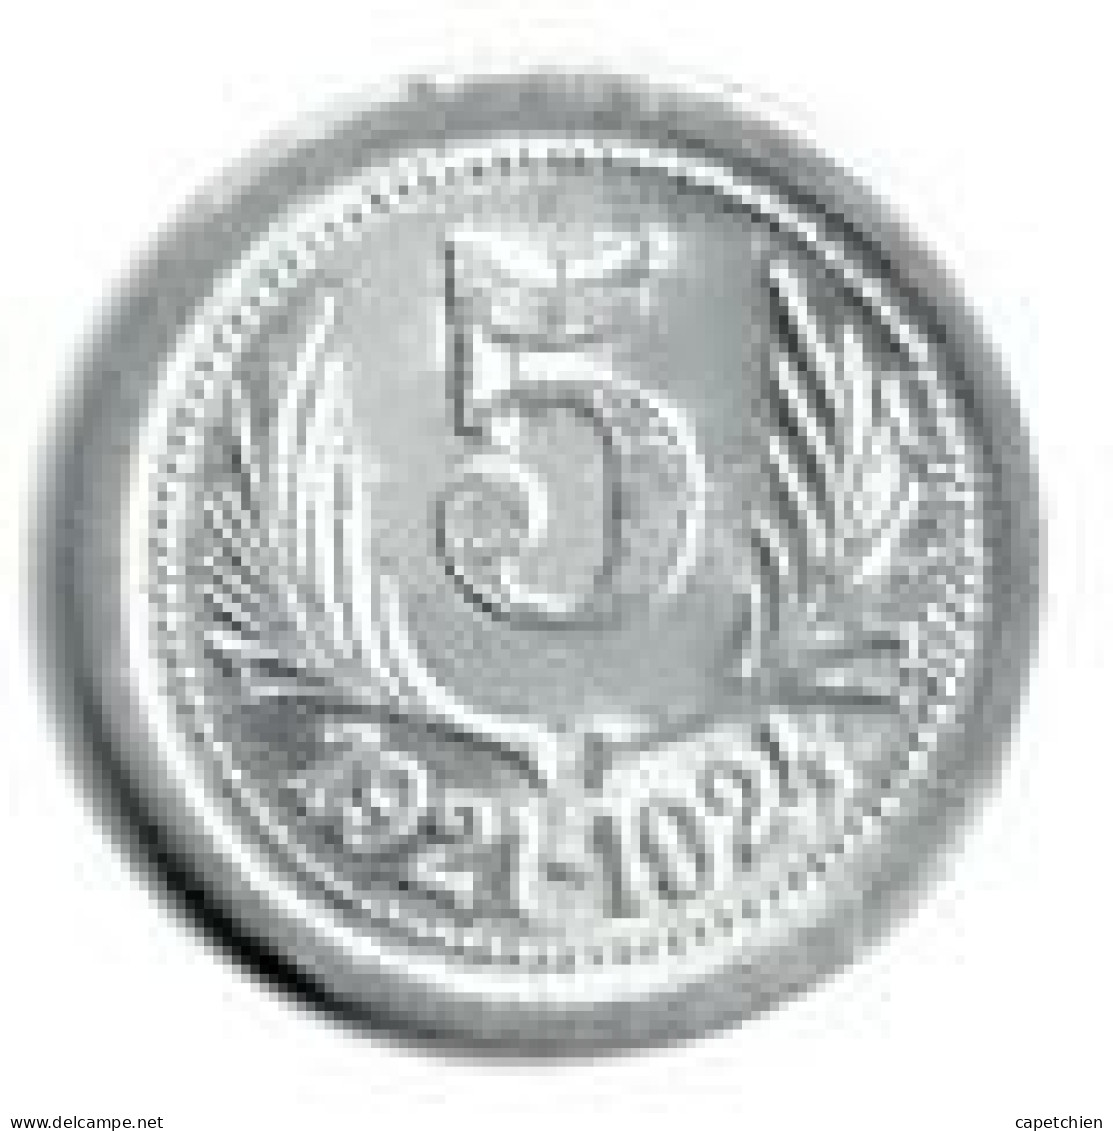 FRANCE / NECESSITE / UNION LATINE / CHAMBRES DE COMMERCE DE L'HERAULT  / 1921 - 1924 /  5 CENT  / ALU / 1.10 G / 21 Mm - Monétaires / De Nécessité